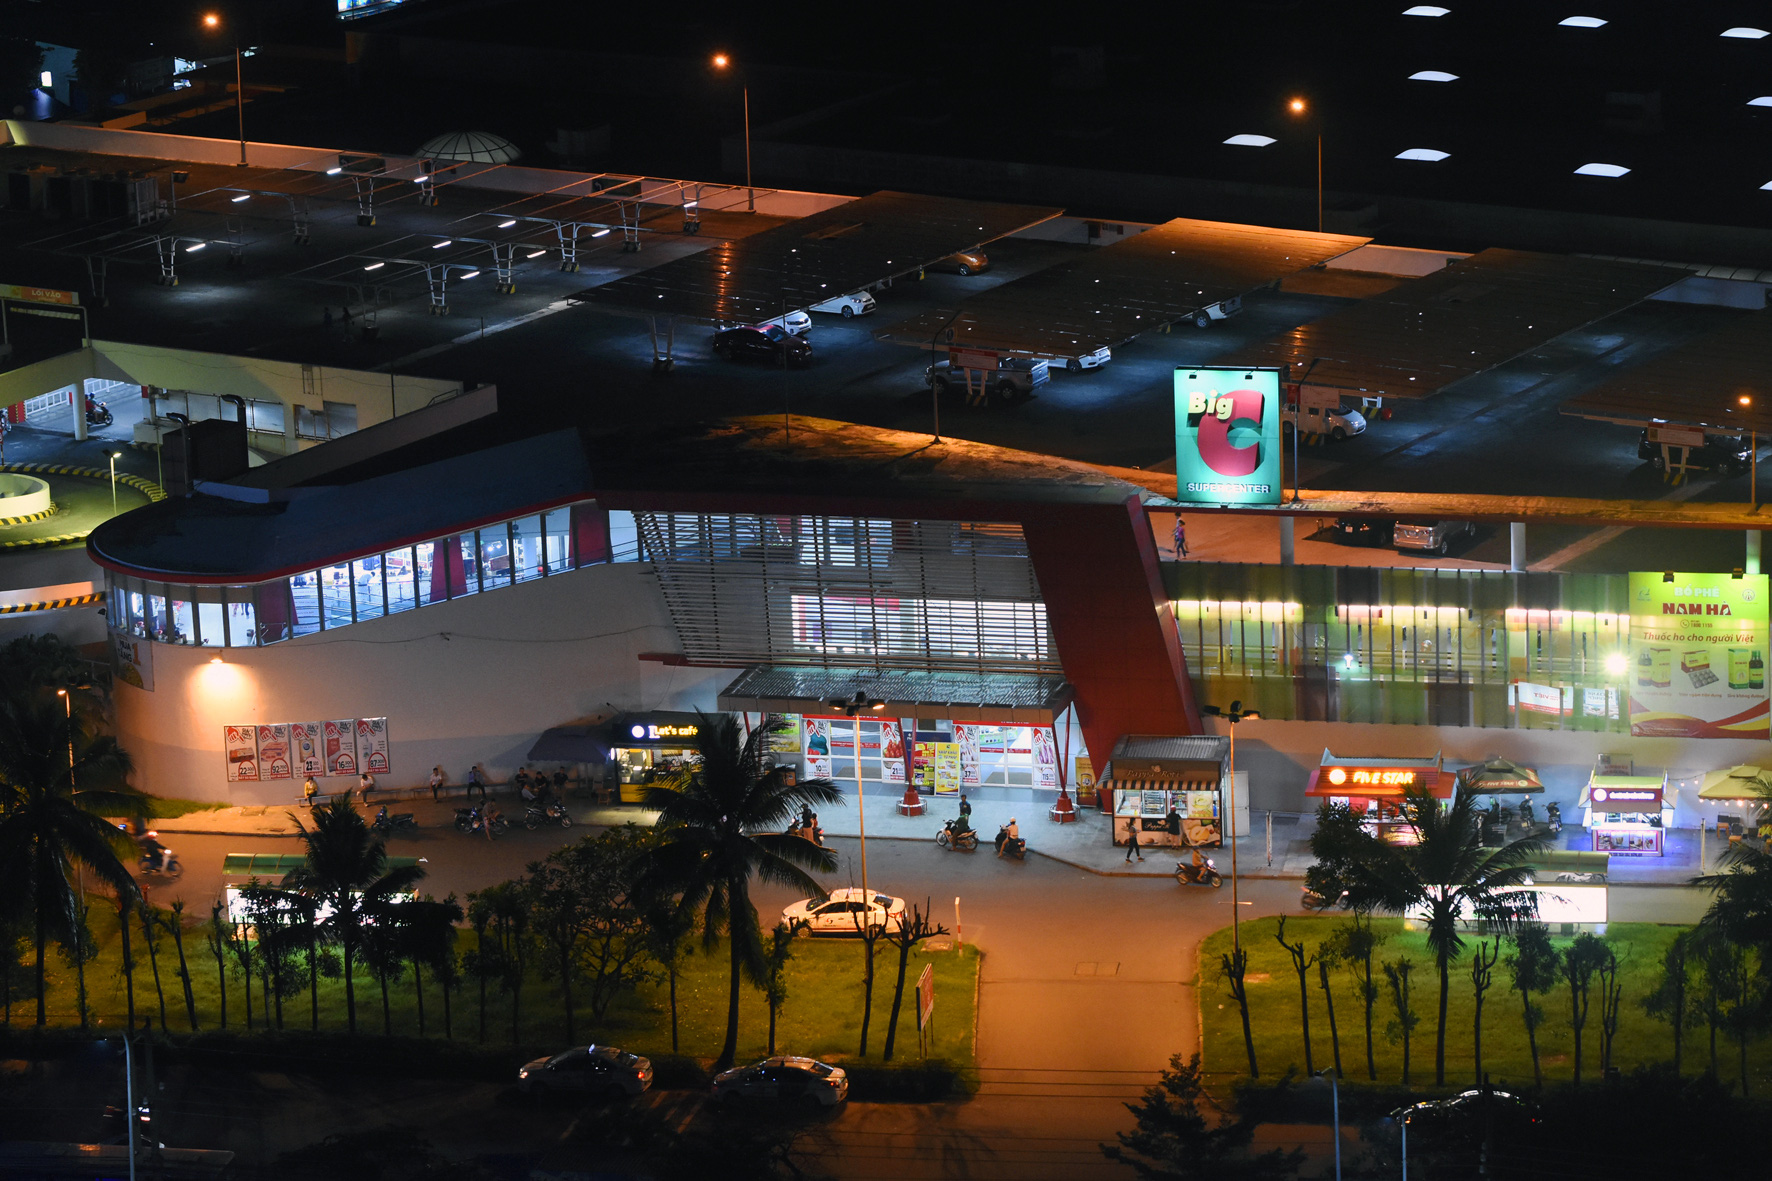 5h sáng 17-6, hỏa tốc cách ly siêu thị Big C Đồng Nai, Biên Hòa họp khẩn - Ảnh 1.